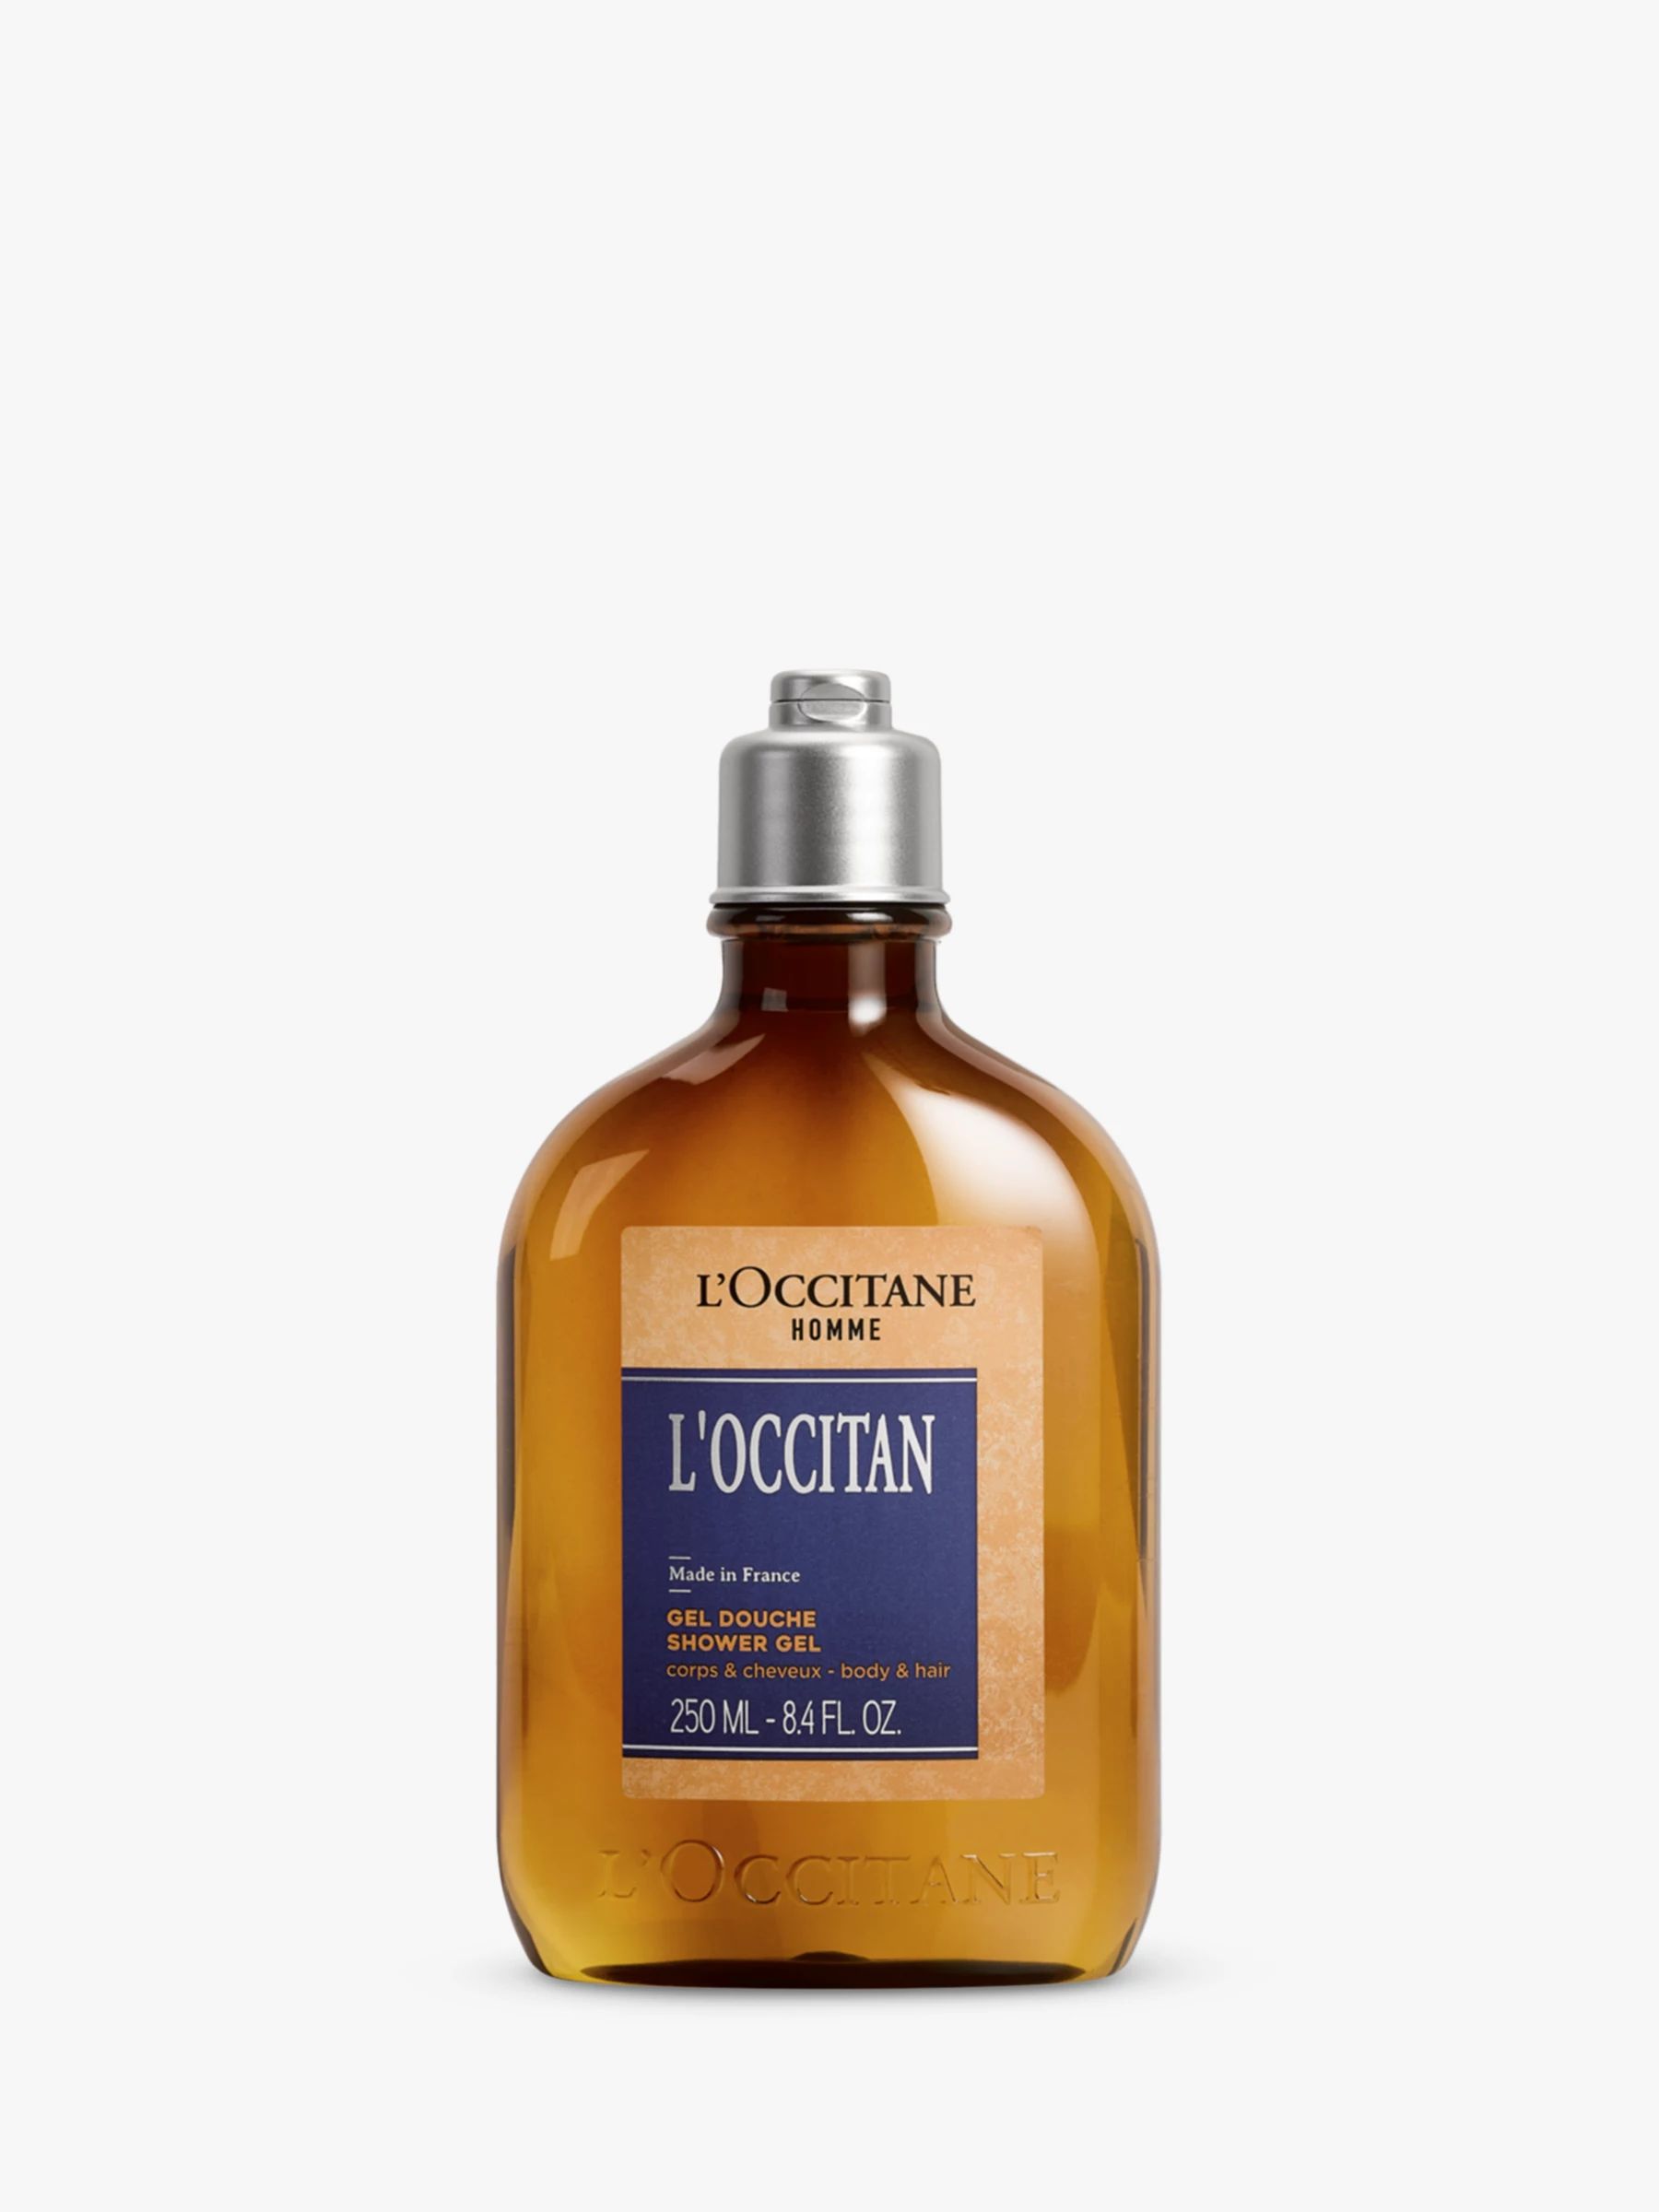 L'OCCITANE Homme L'Occitan Hair & Body Shower Gel, 250ml | John Lewis (UK)